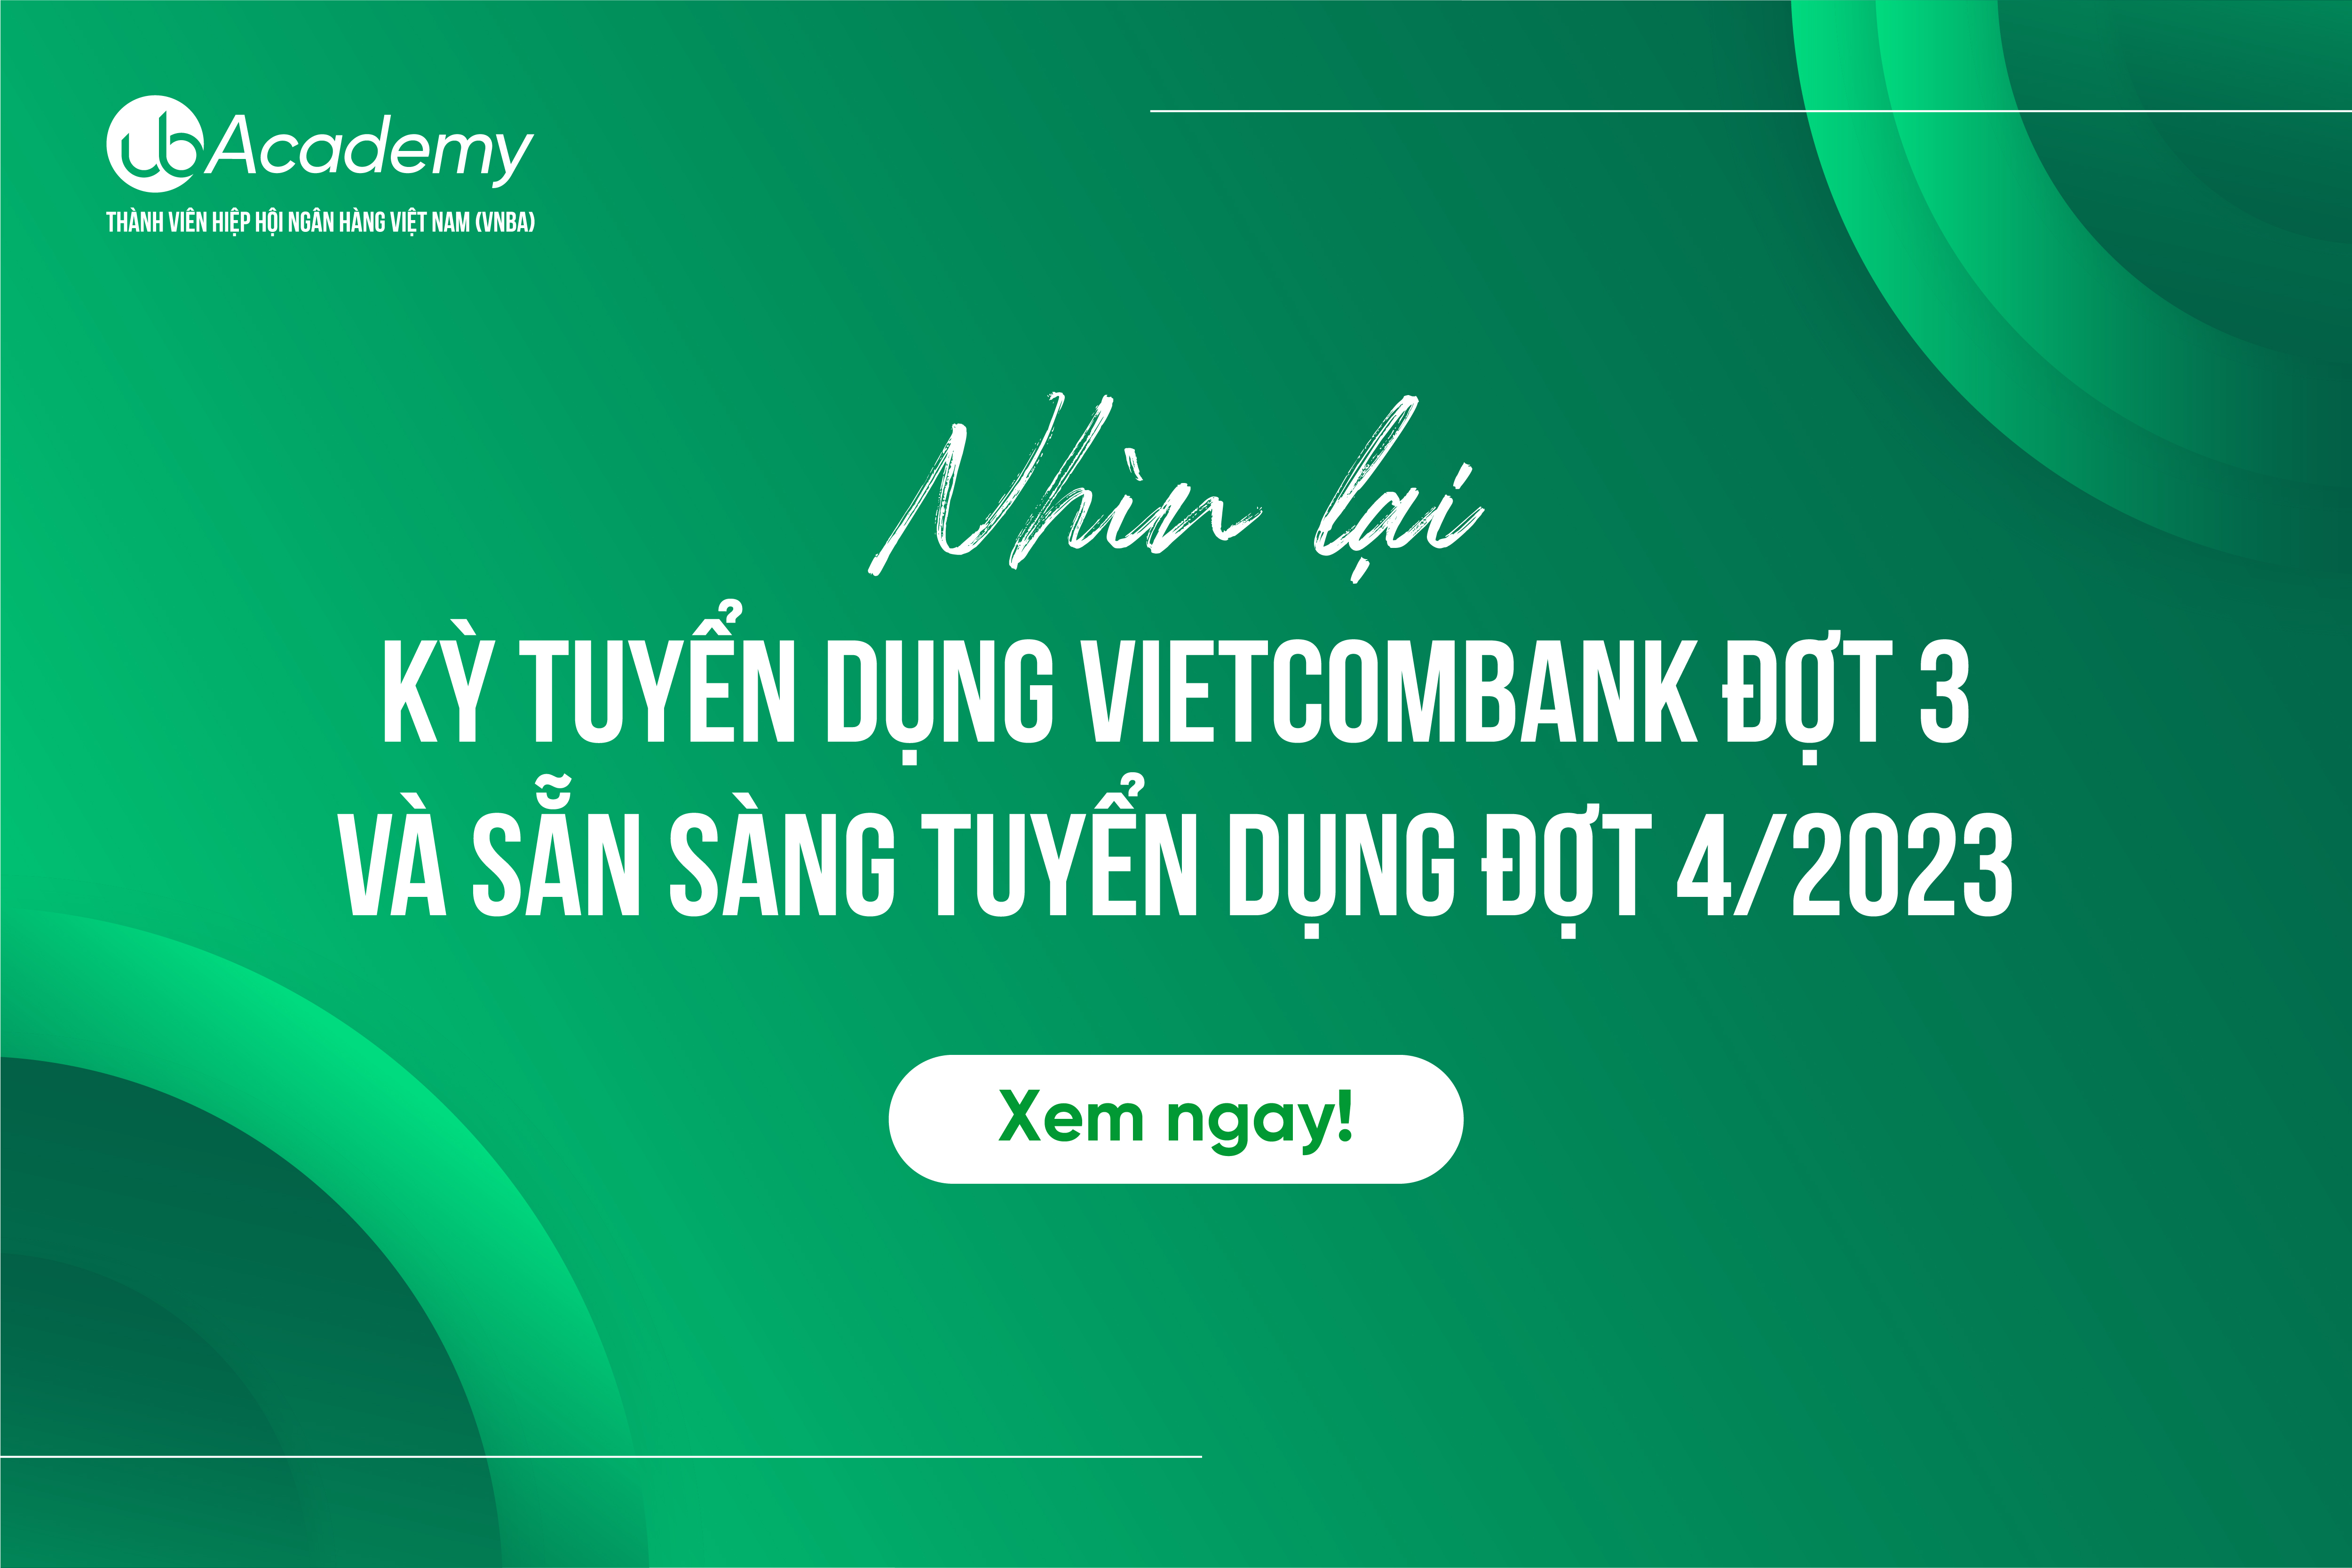 Nhìn lại kỳ tuyển dụng Vietcombank đợt 3/2023 và sẵn sàng tuyển dụng đợt 4/2023